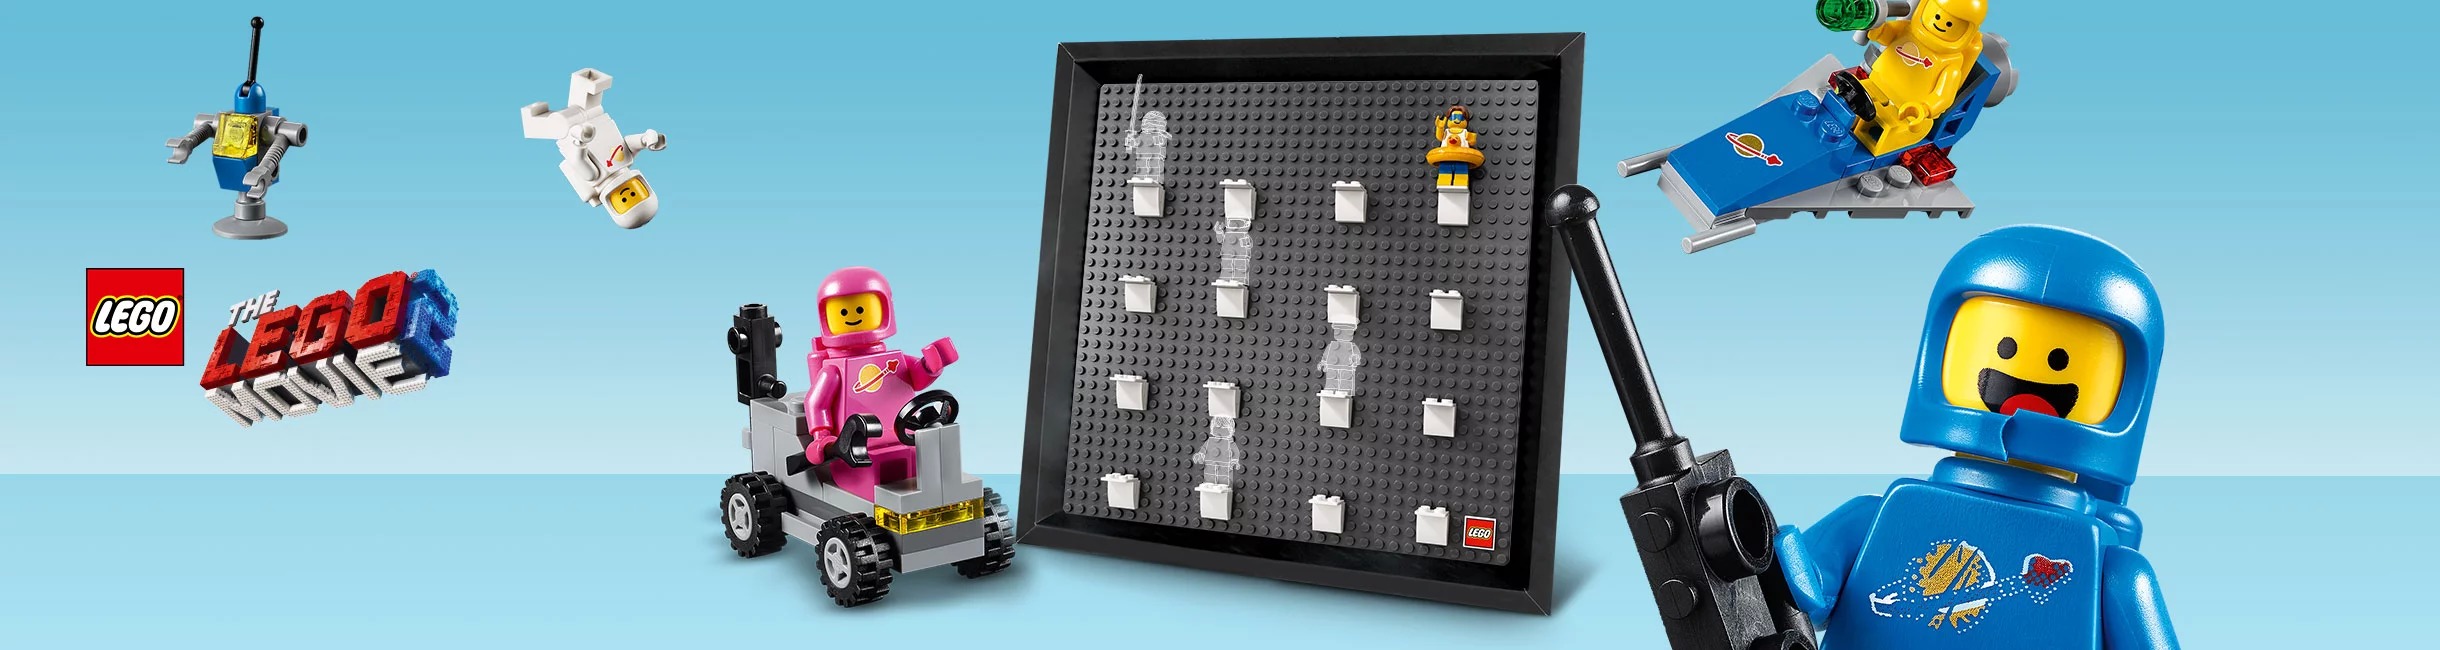 Рекламная акция LEGO (Лего) «Коллекционируй красиво!»